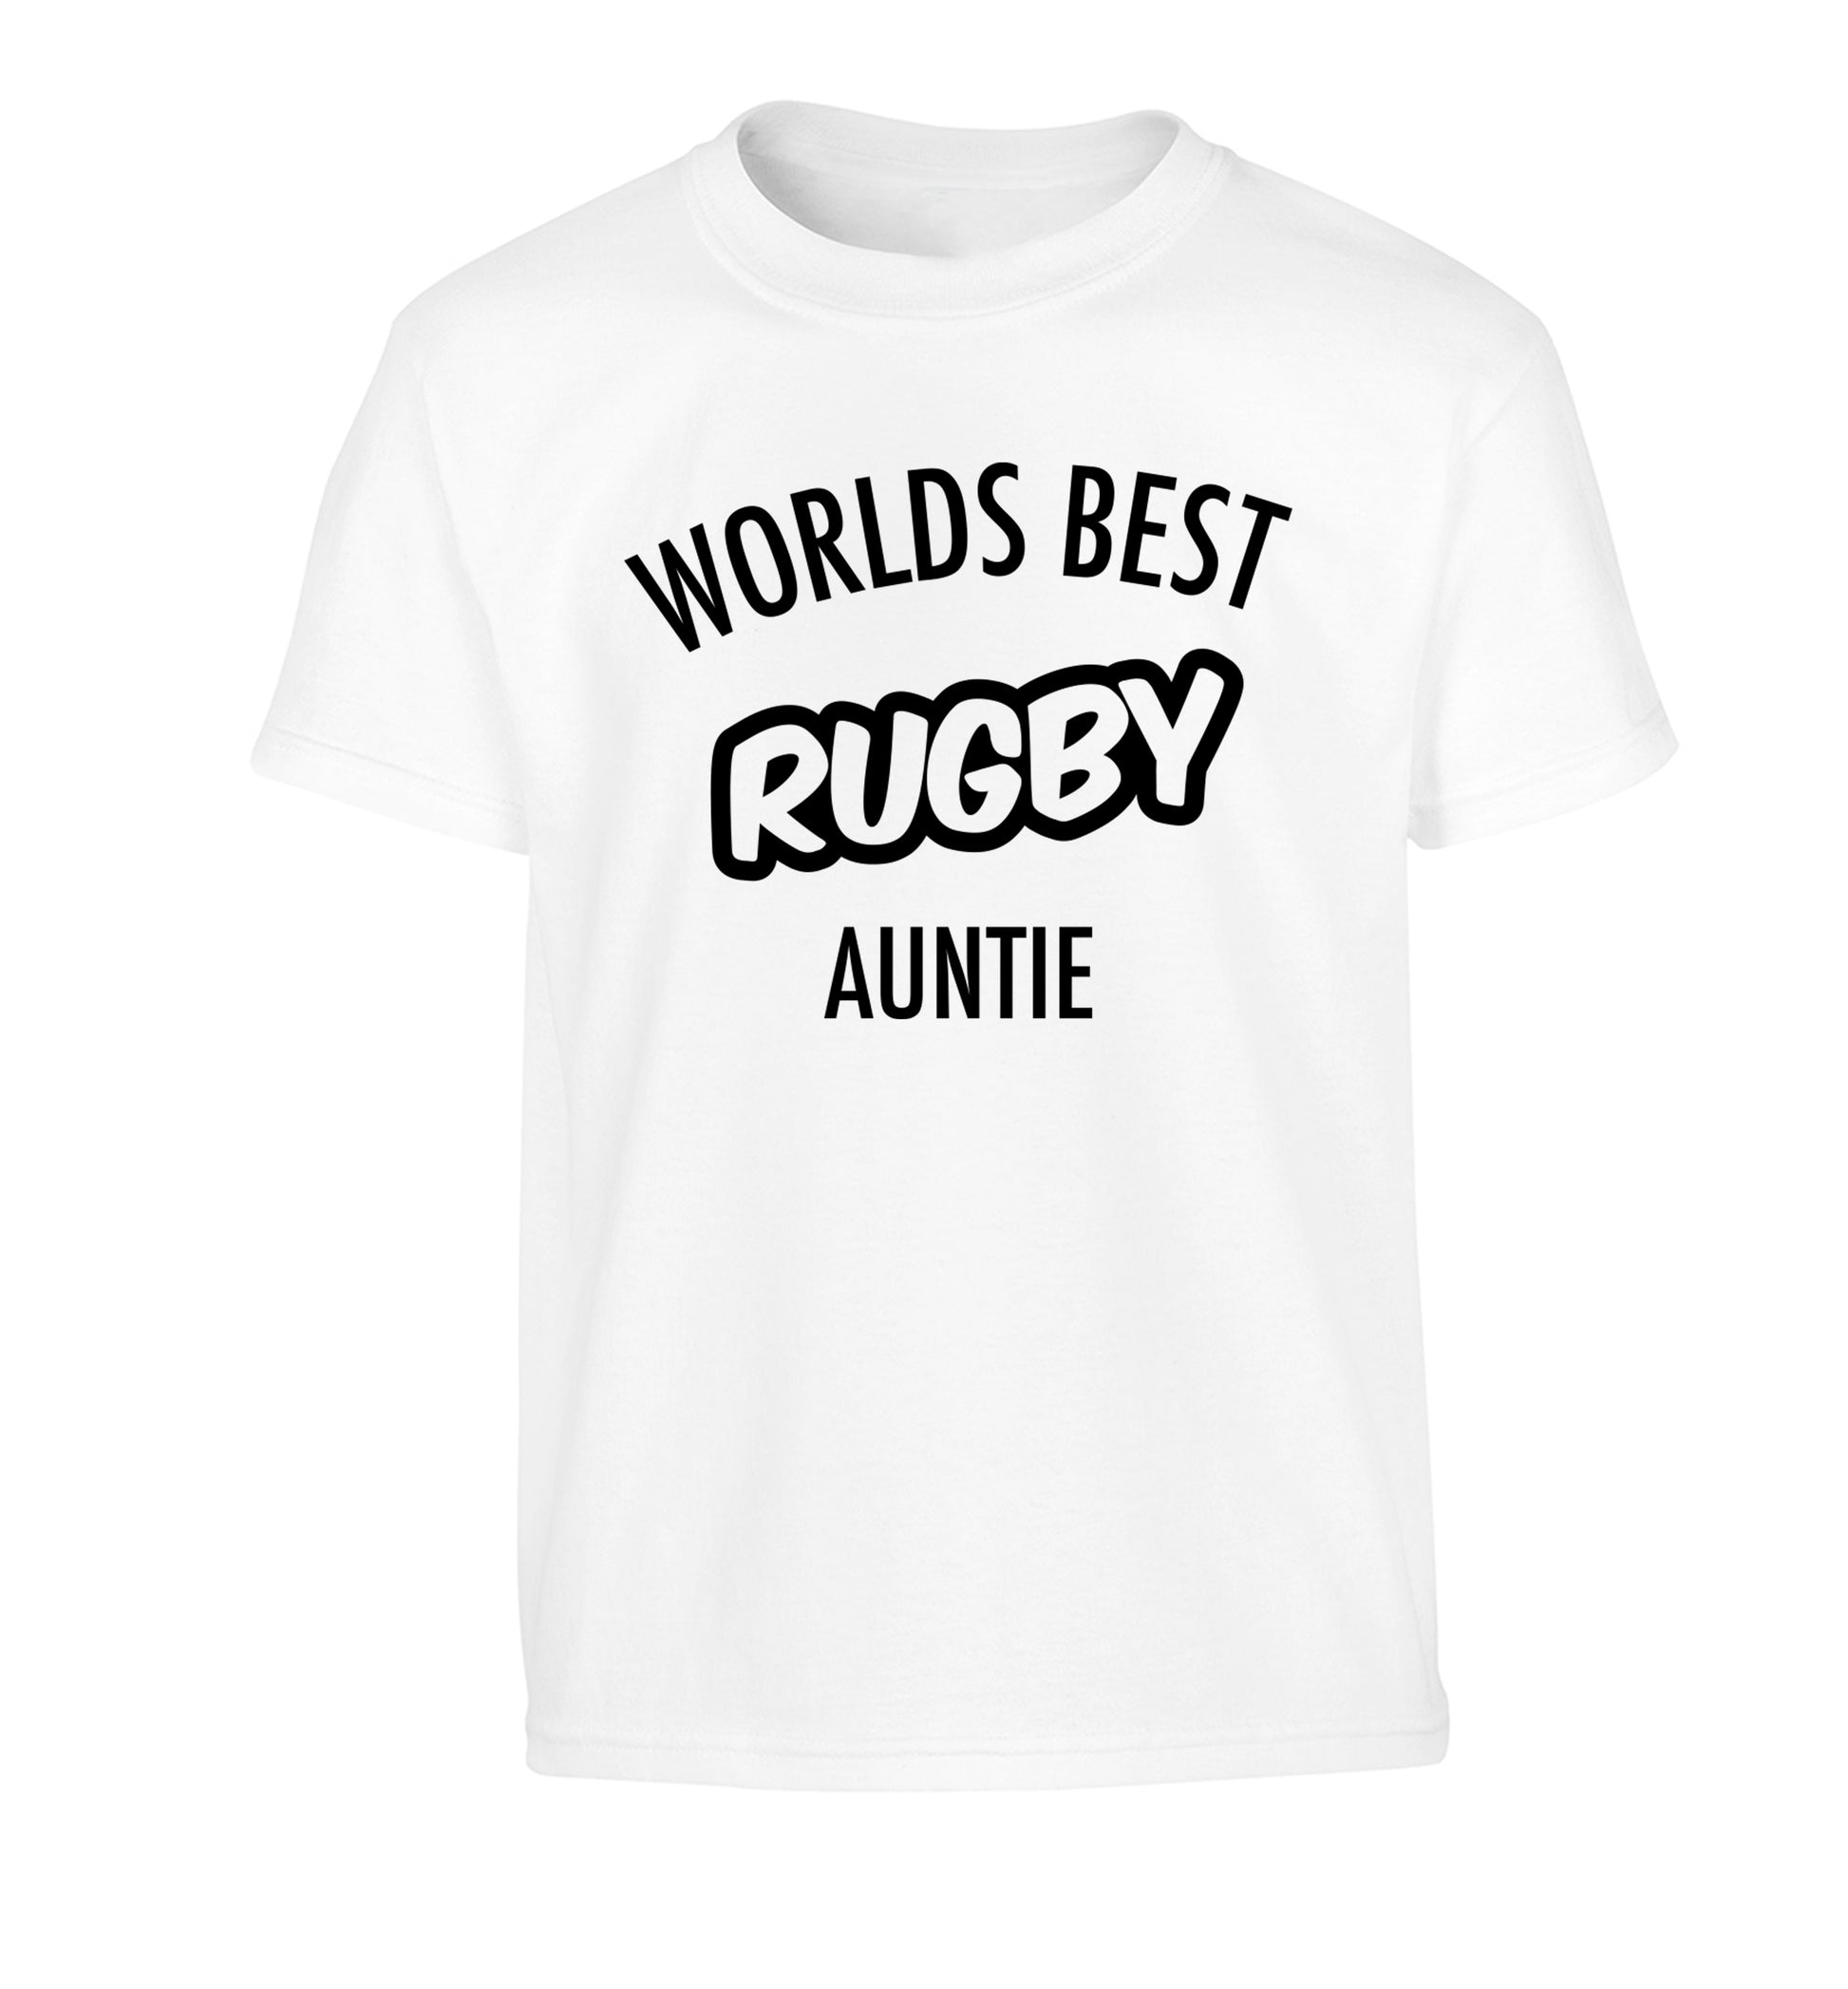 Worlds best rugby auntie Children's white Tshirt 12-13 Years